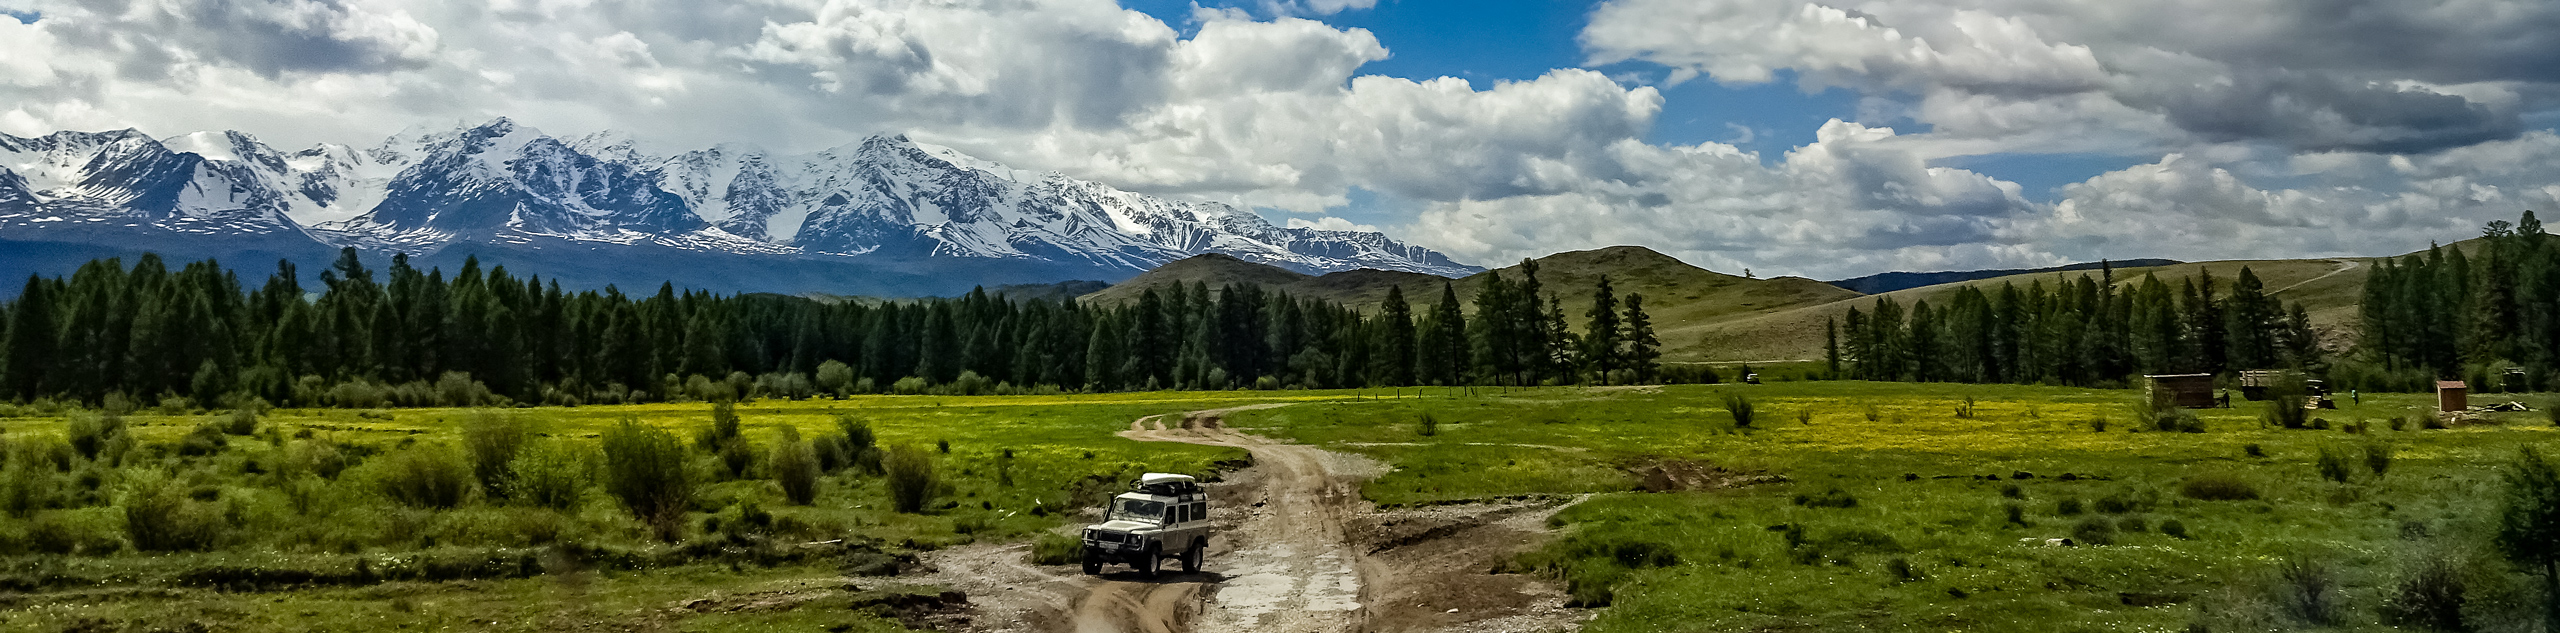 Altai Mountains Adventure Tour